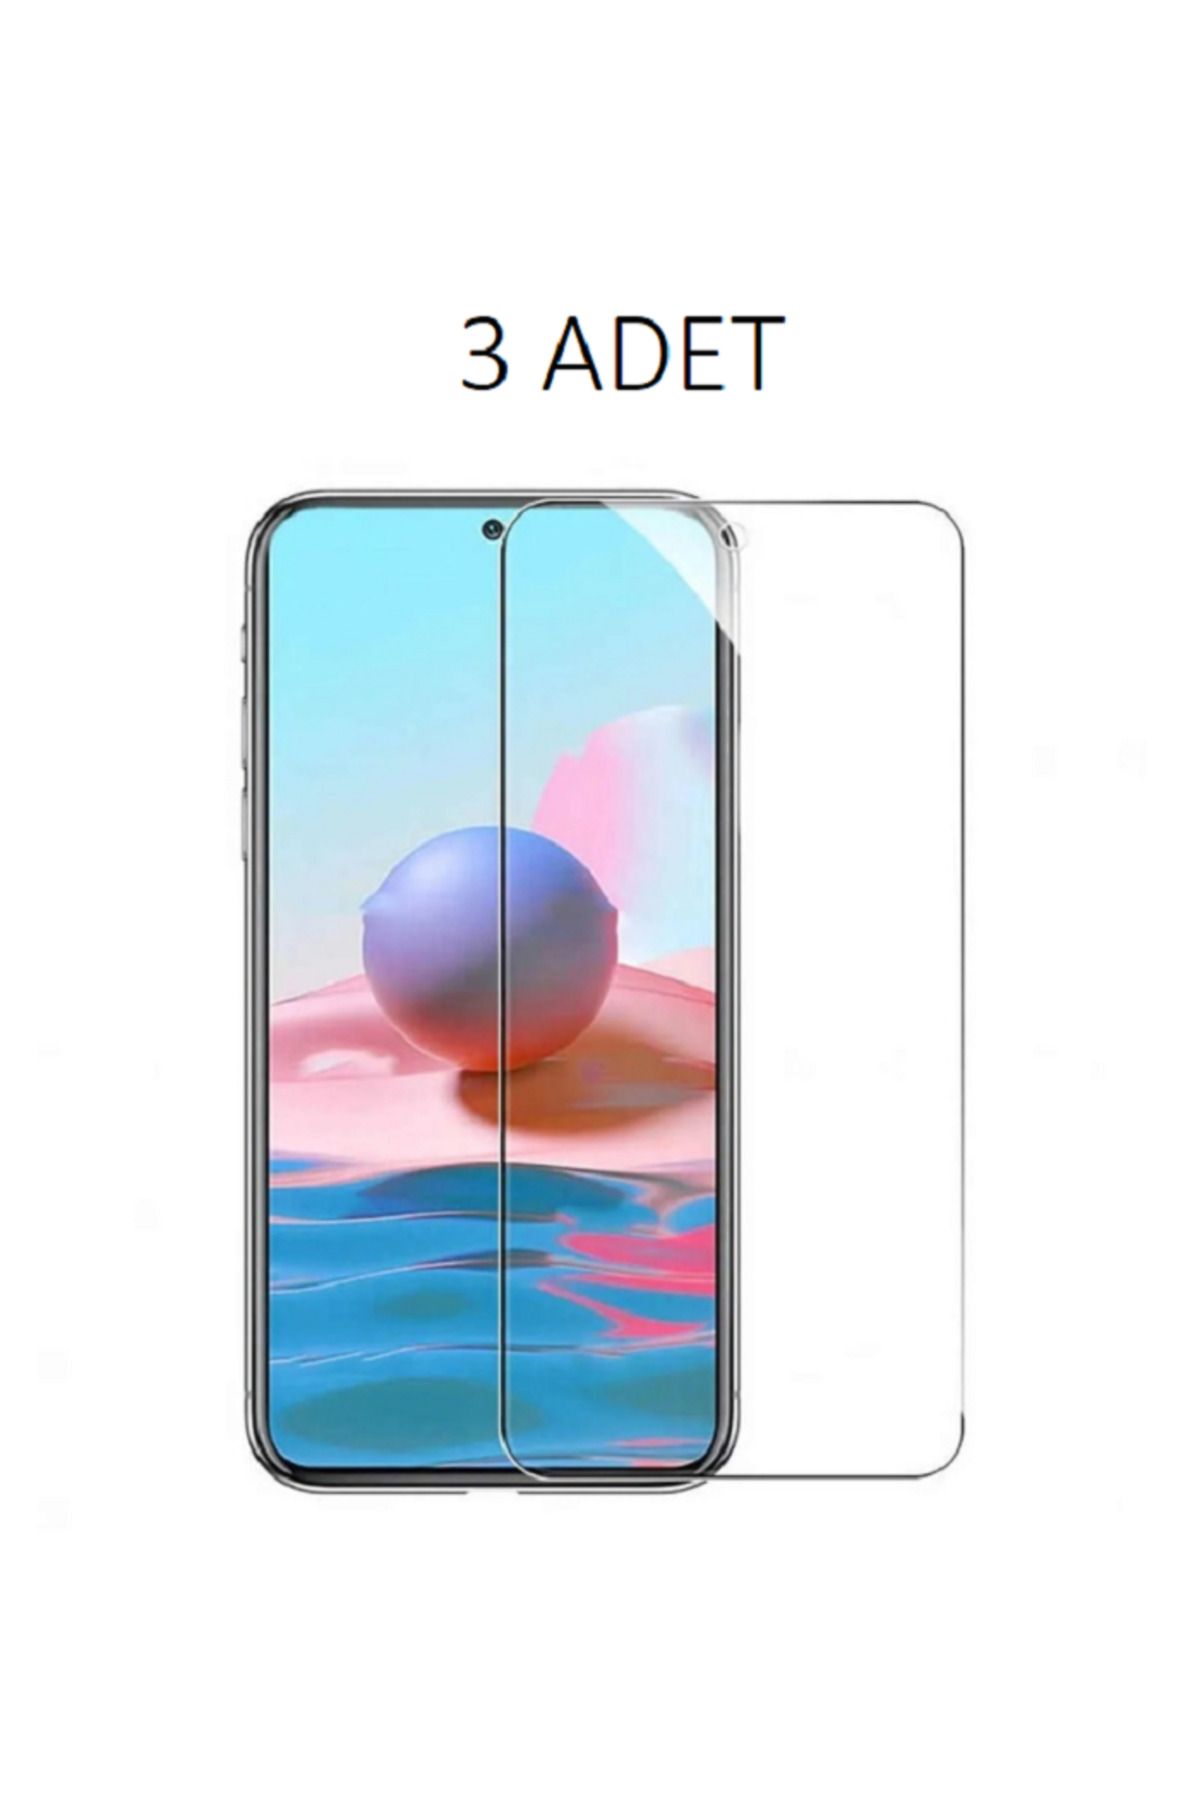 LG 3 ADET LG K50S Uyumlu Şeffaf Esnek Nano Ekran Koruyucu